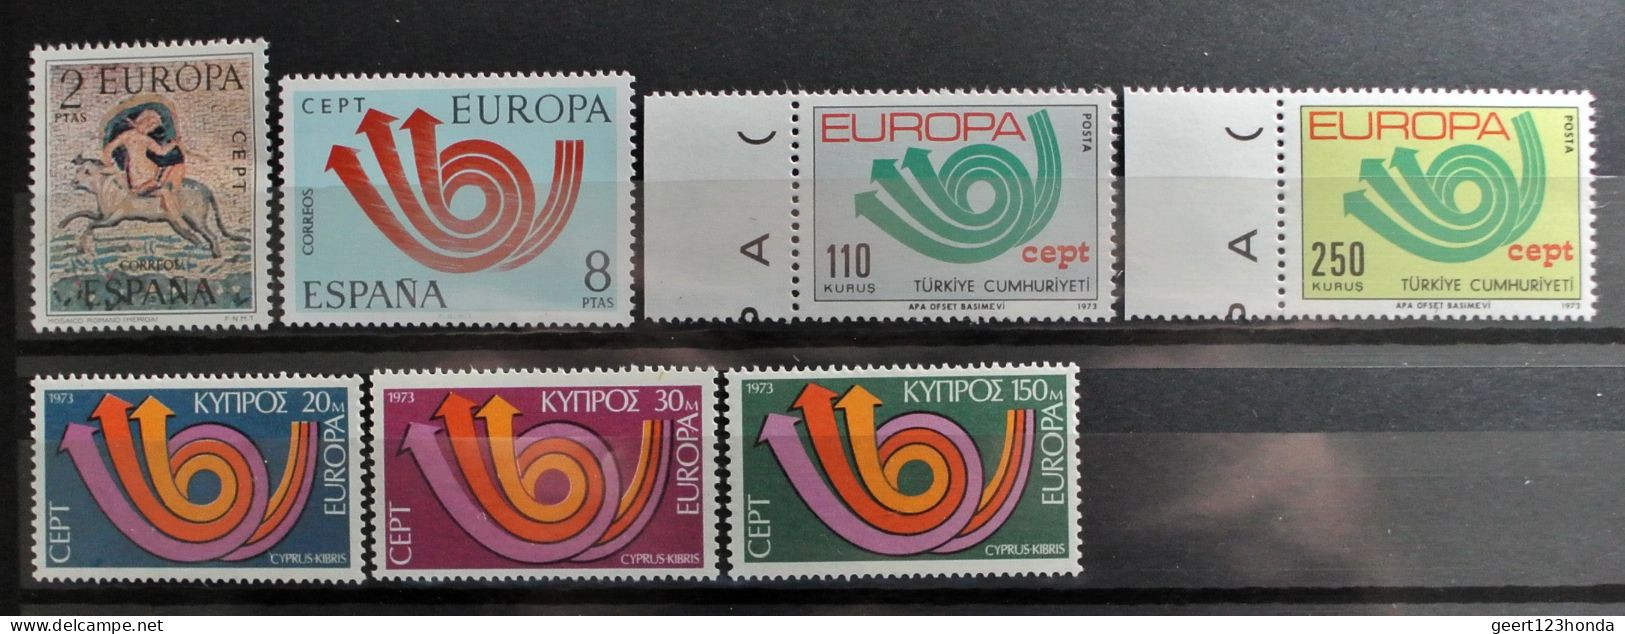 EUROPA CEPT 1973 " JAHRGANGE 1973" Sehr Schon Komplett Postfrisch € 115,30 - 1973